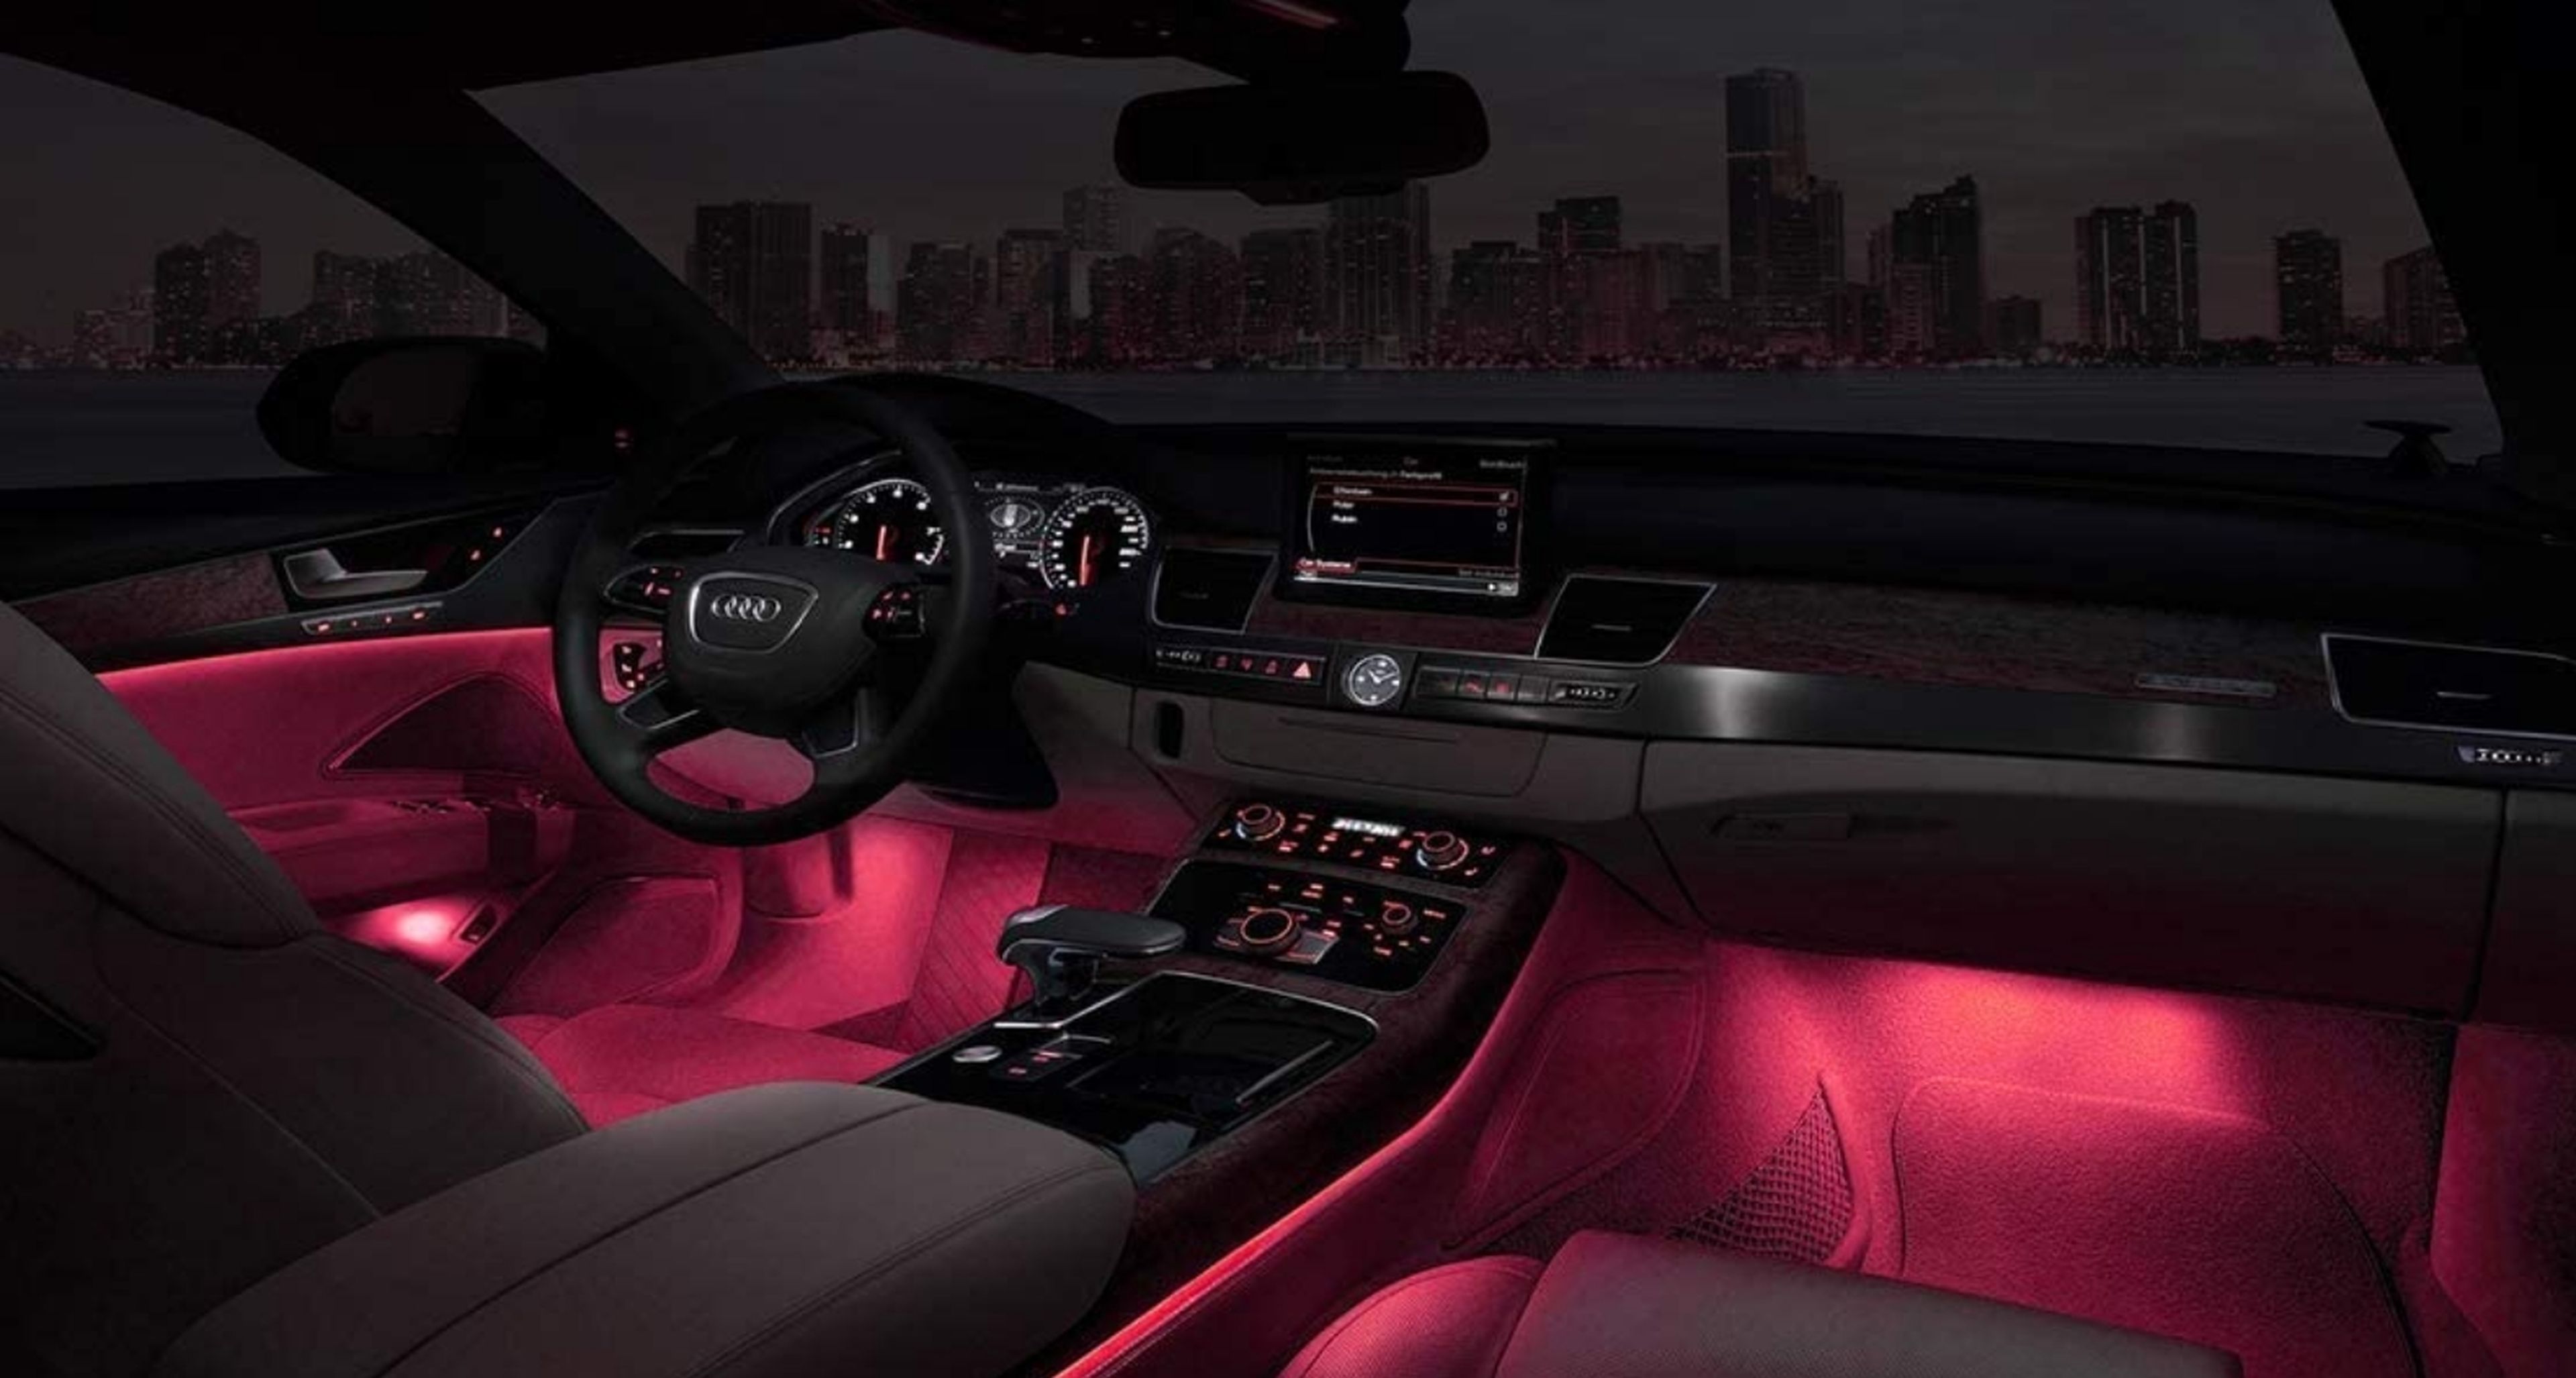 Ilumina el interior de tu coche con este kit de luces LED RGB por 22 euros  que sigue el ritmo de la música